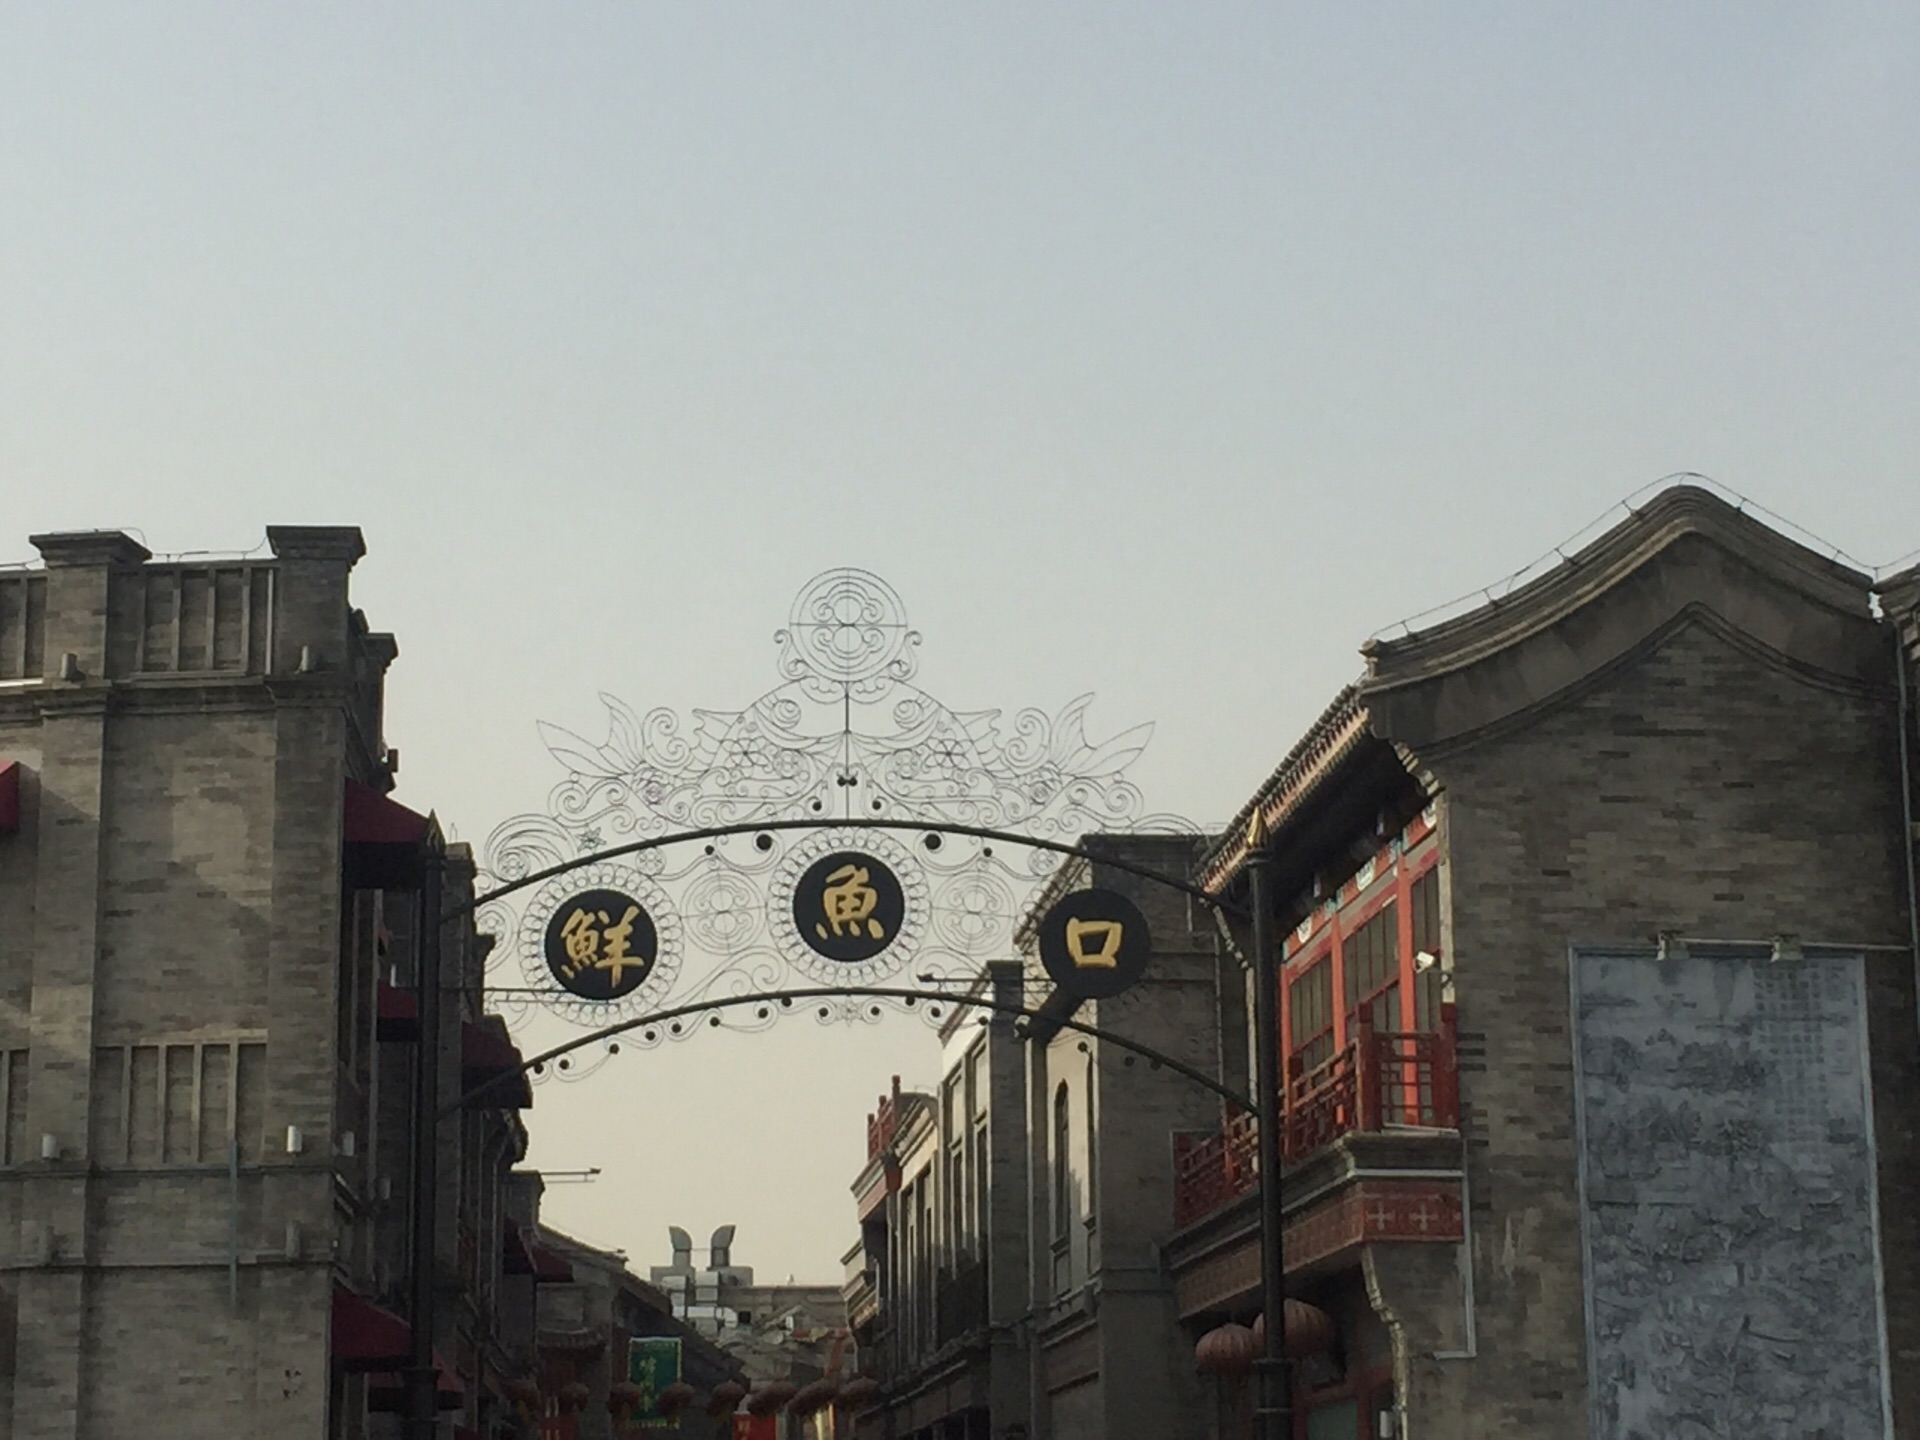 2019大栅栏_旅游攻略_门票_地址_游记点评,北京旅游景点推荐 - 去哪儿攻略社区